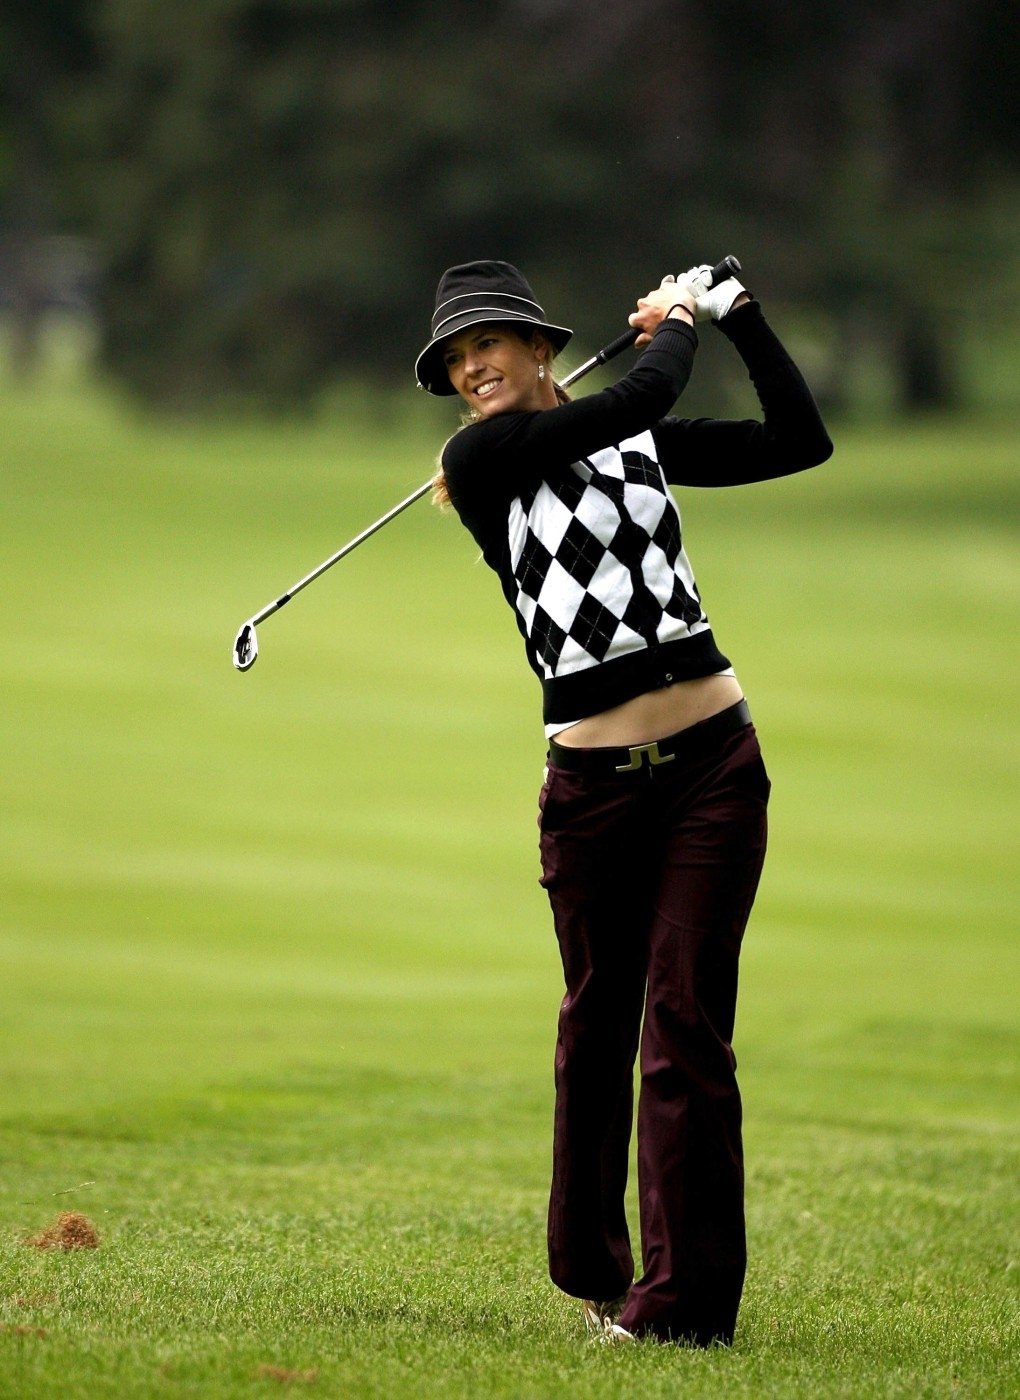 Anna Rawsonová. Australanka, která váhá mezi dráhou golfistky a modelky. Jde jí obojí